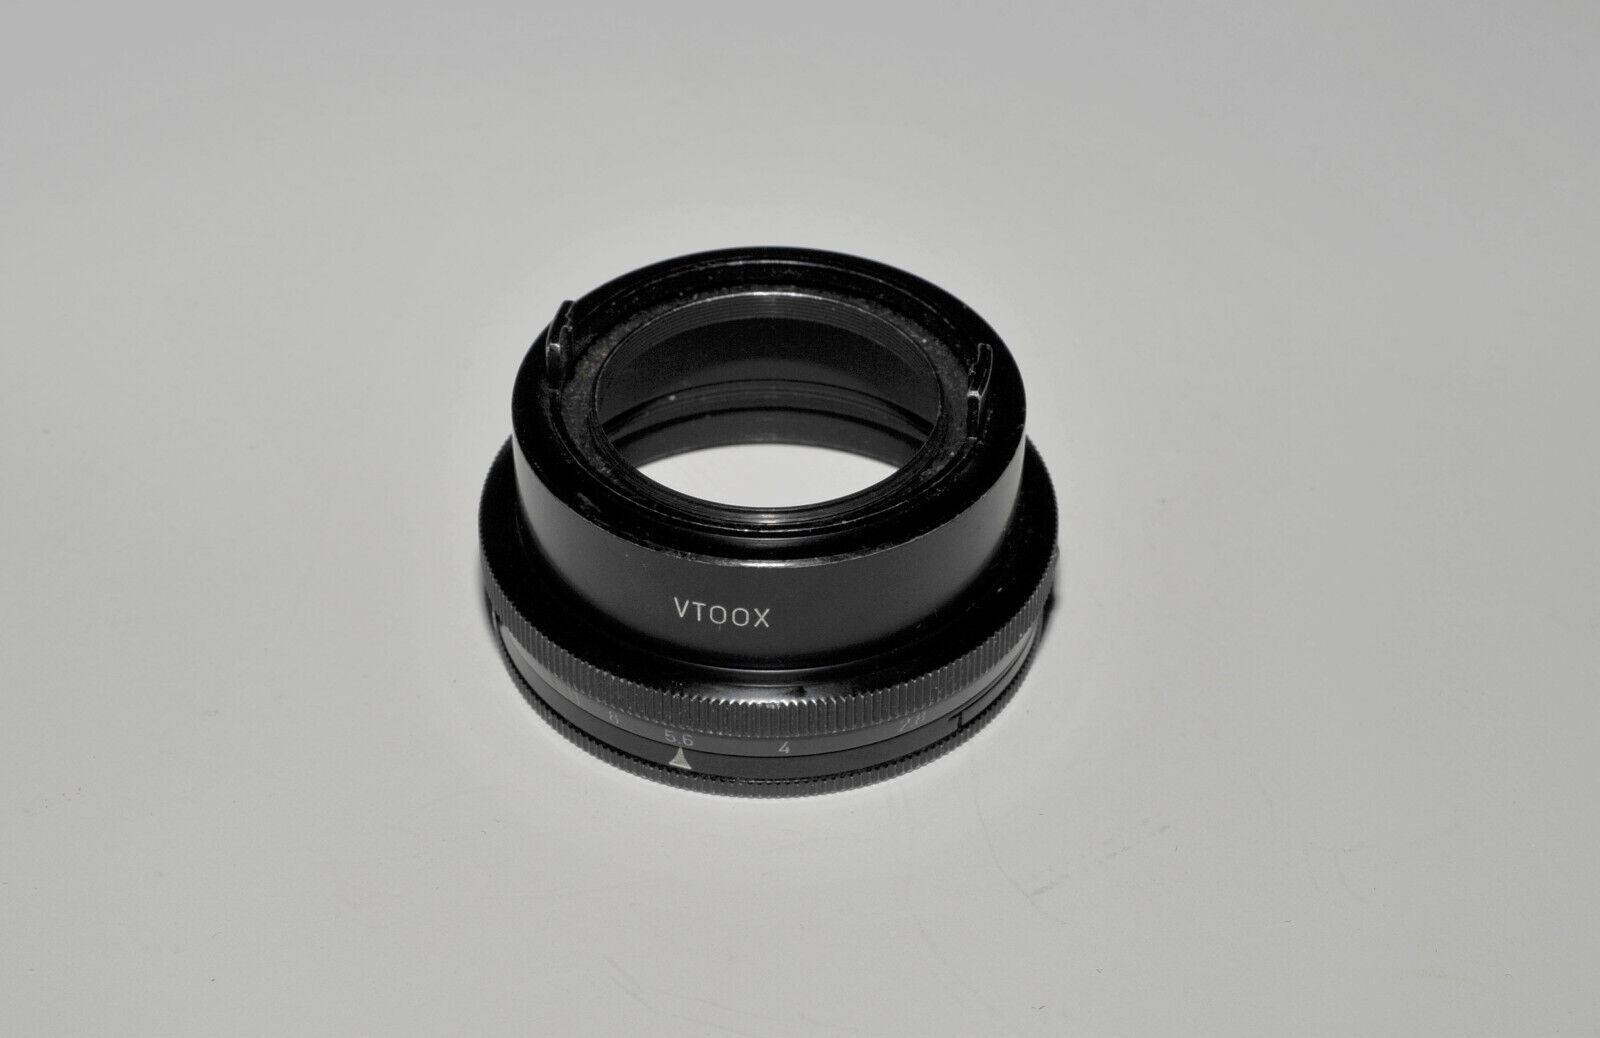 Primary image for Leica 16622/VTOOX Aperture Adjust Lens Hood for Elmar 5cm (50mm) f/2.8 Lens ONLY